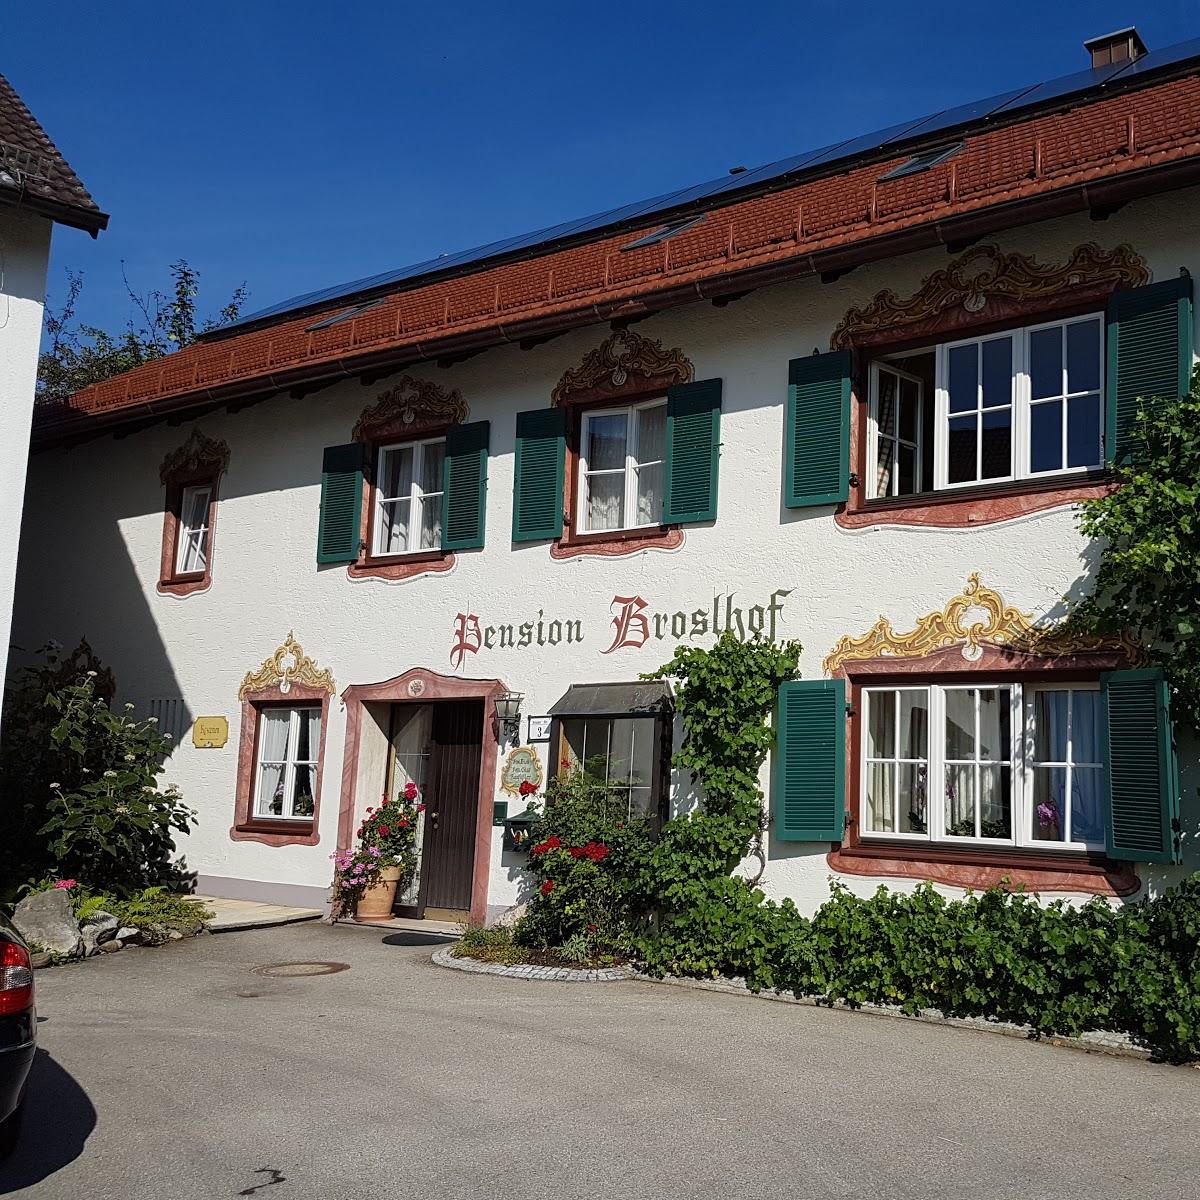 Restaurant "Pension Broslhof" in Inning am Ammersee